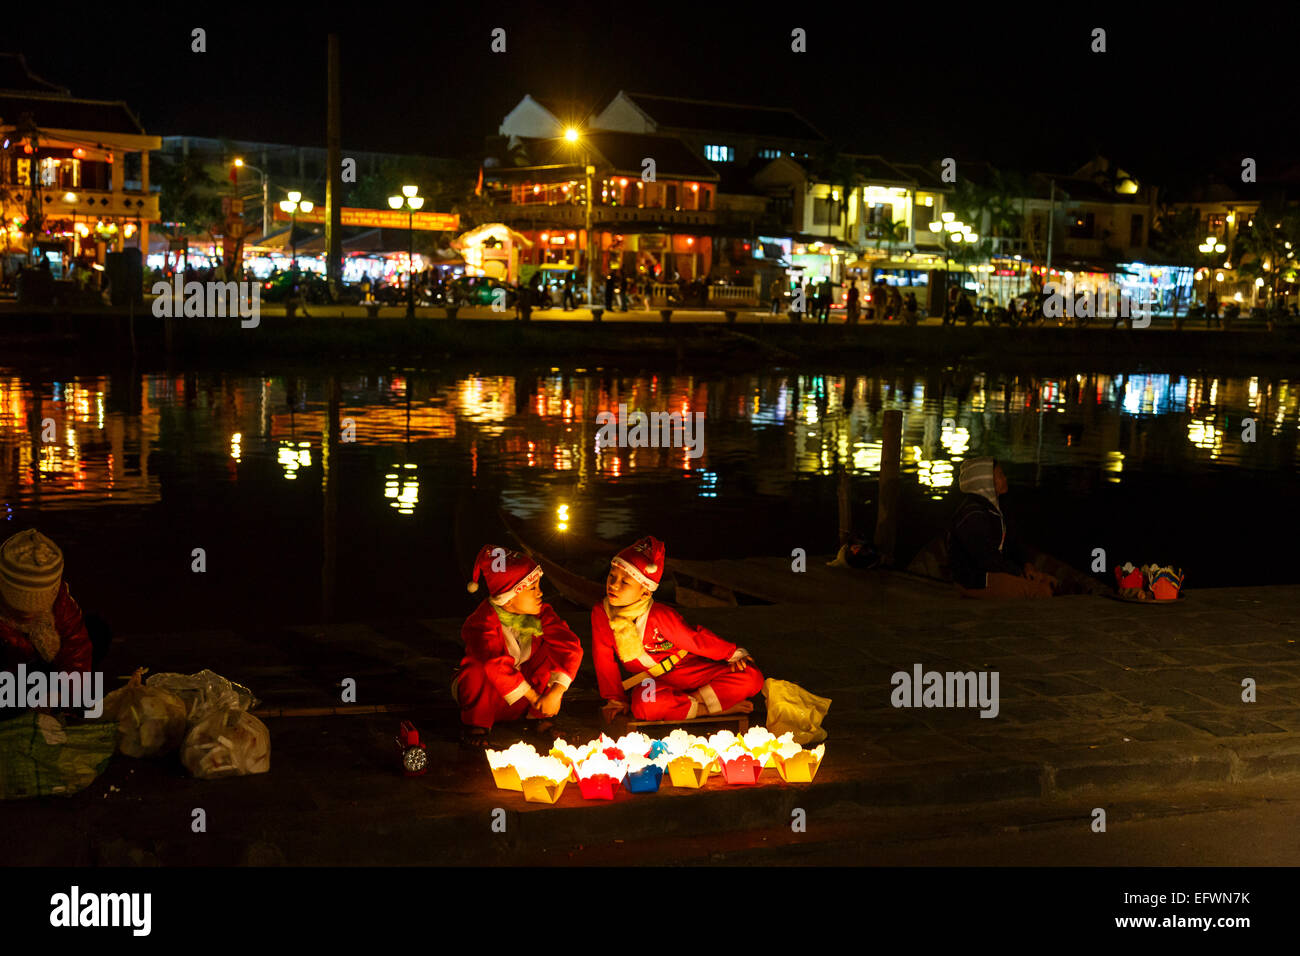 Niños vestidos como Santa Claus vendiendo velas flotantes, Hoi An, Vietnam. Foto de stock